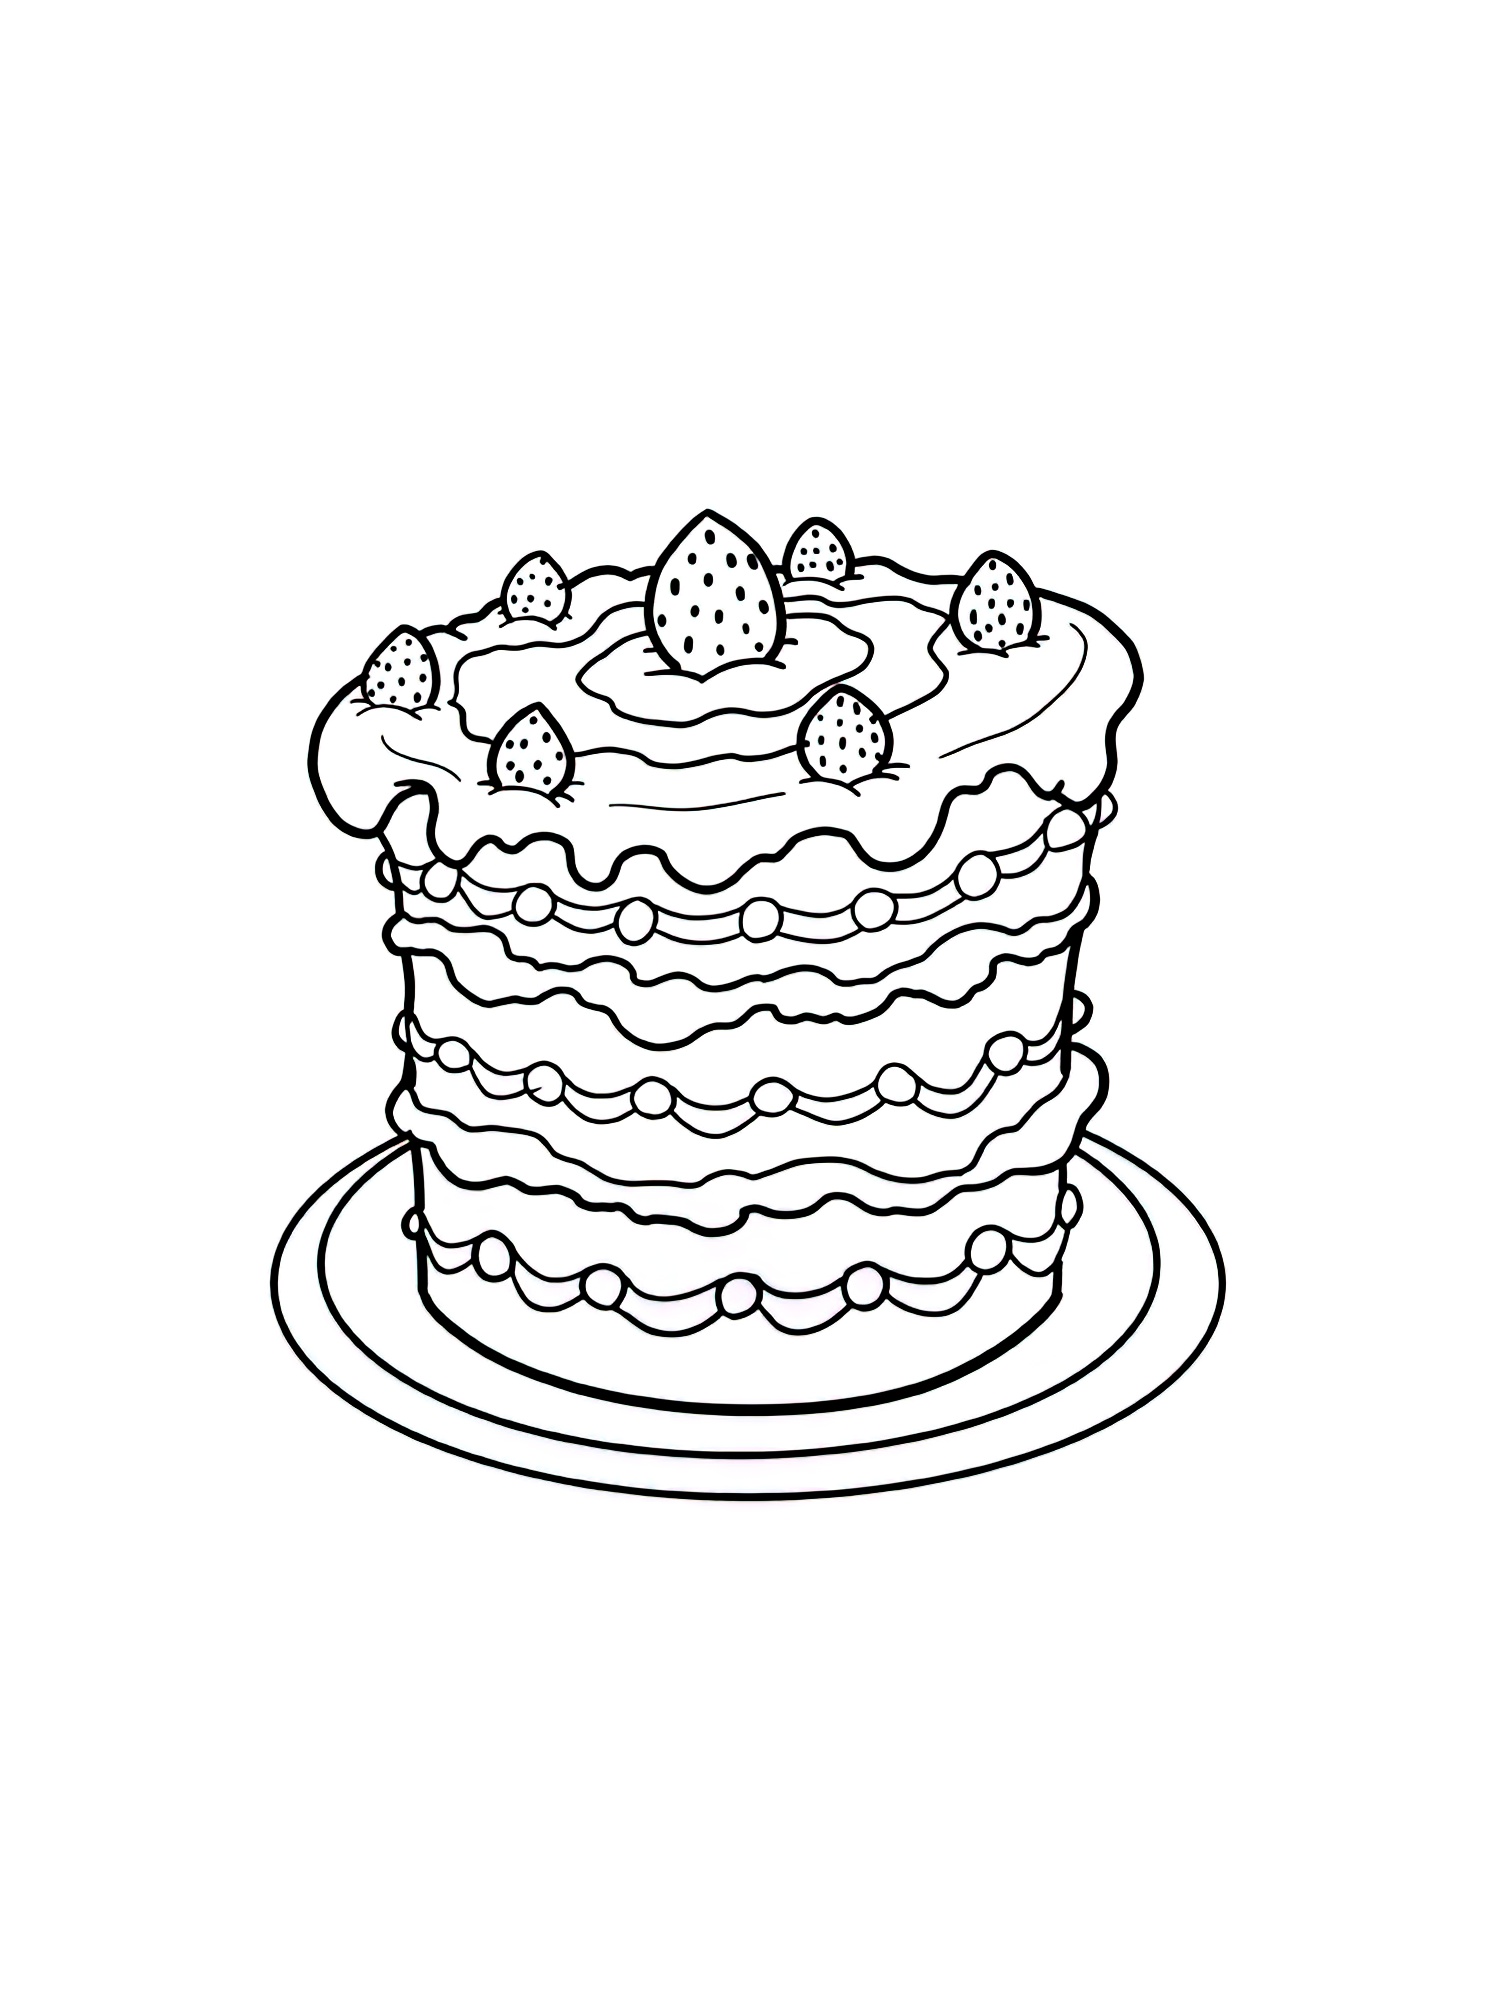 Торт распечатать а4. Раскраска торт. Тортик раскраска для детей. Раскраска для малышей тортик. Раскраска сладости торт.